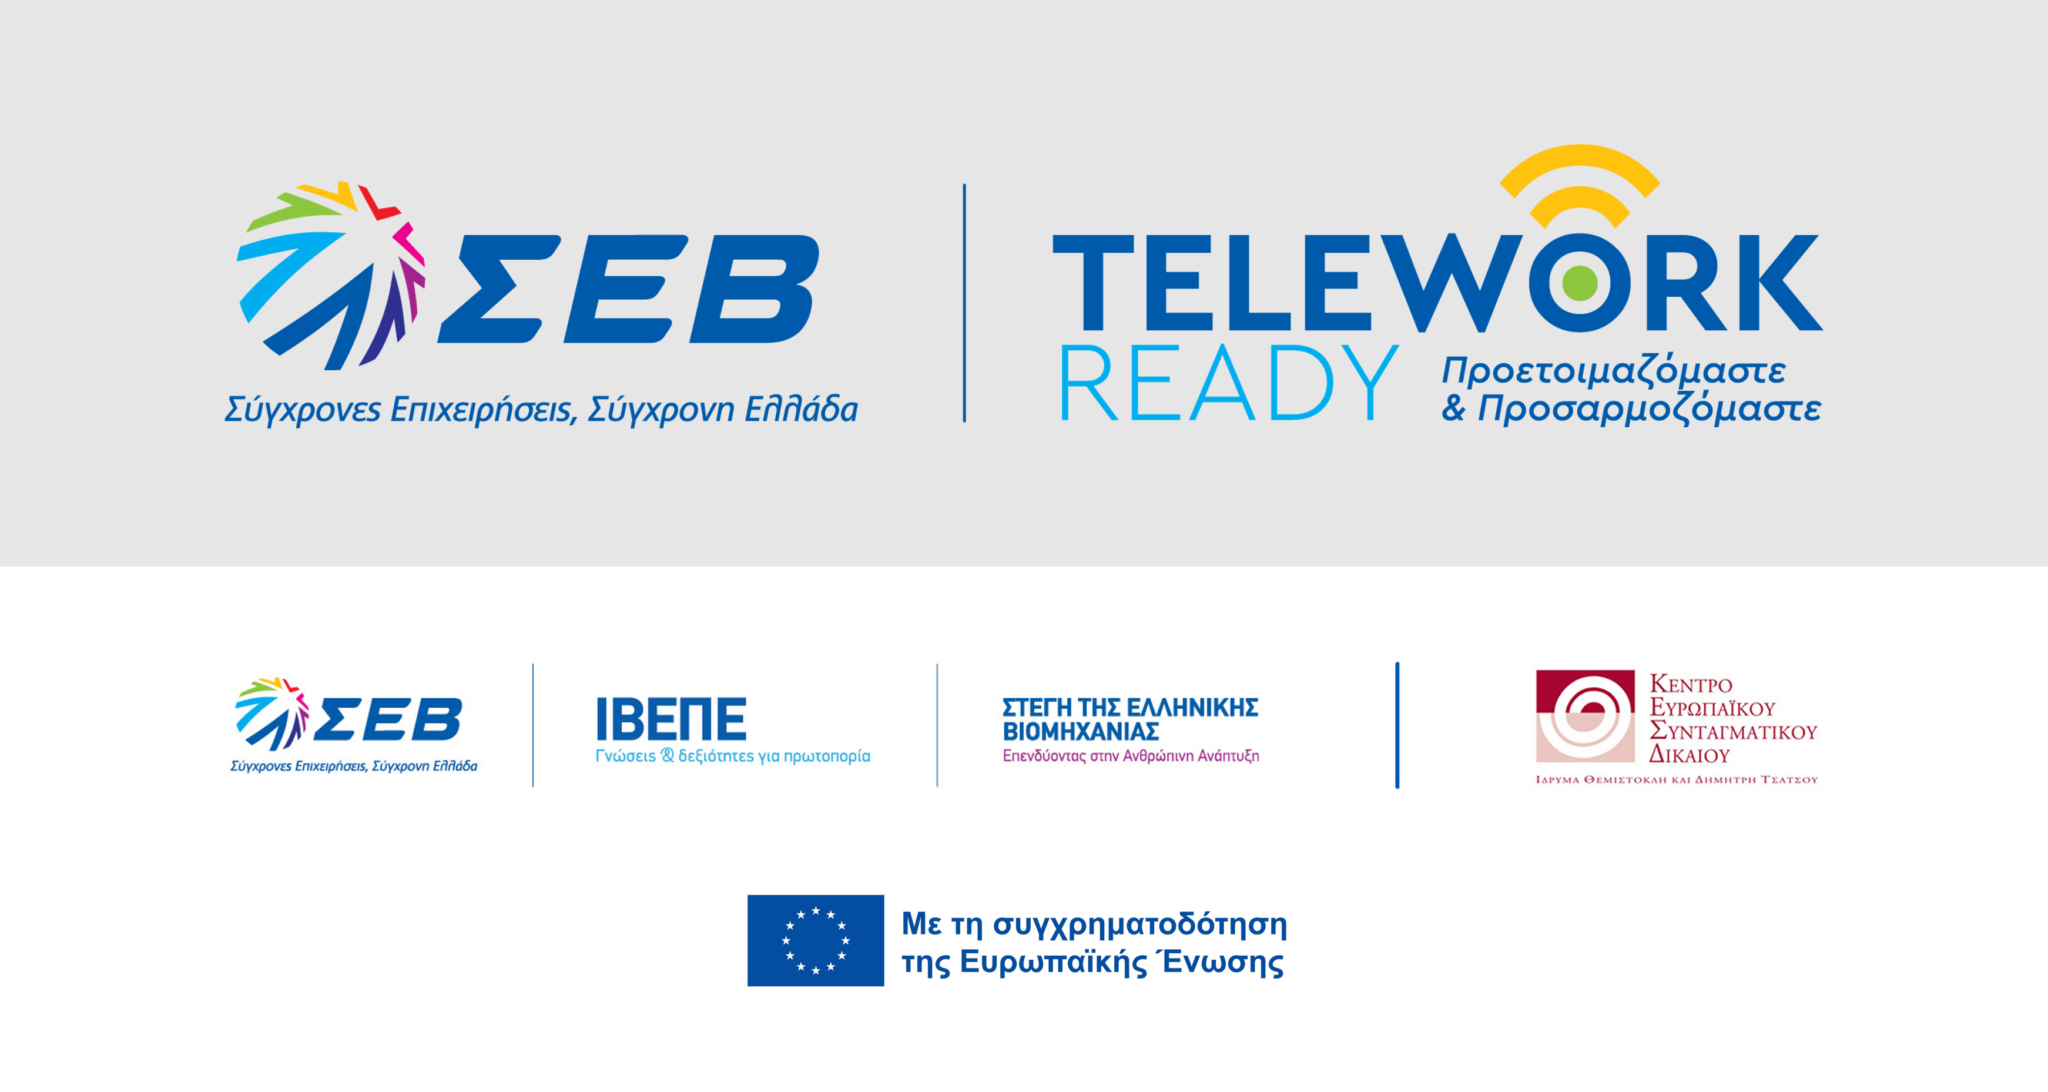 ΣΕΒ: Yλοποιεί ευρωπαϊκό πρόγραμμα για την τηλεργασία – Τι περιλαμβάνει